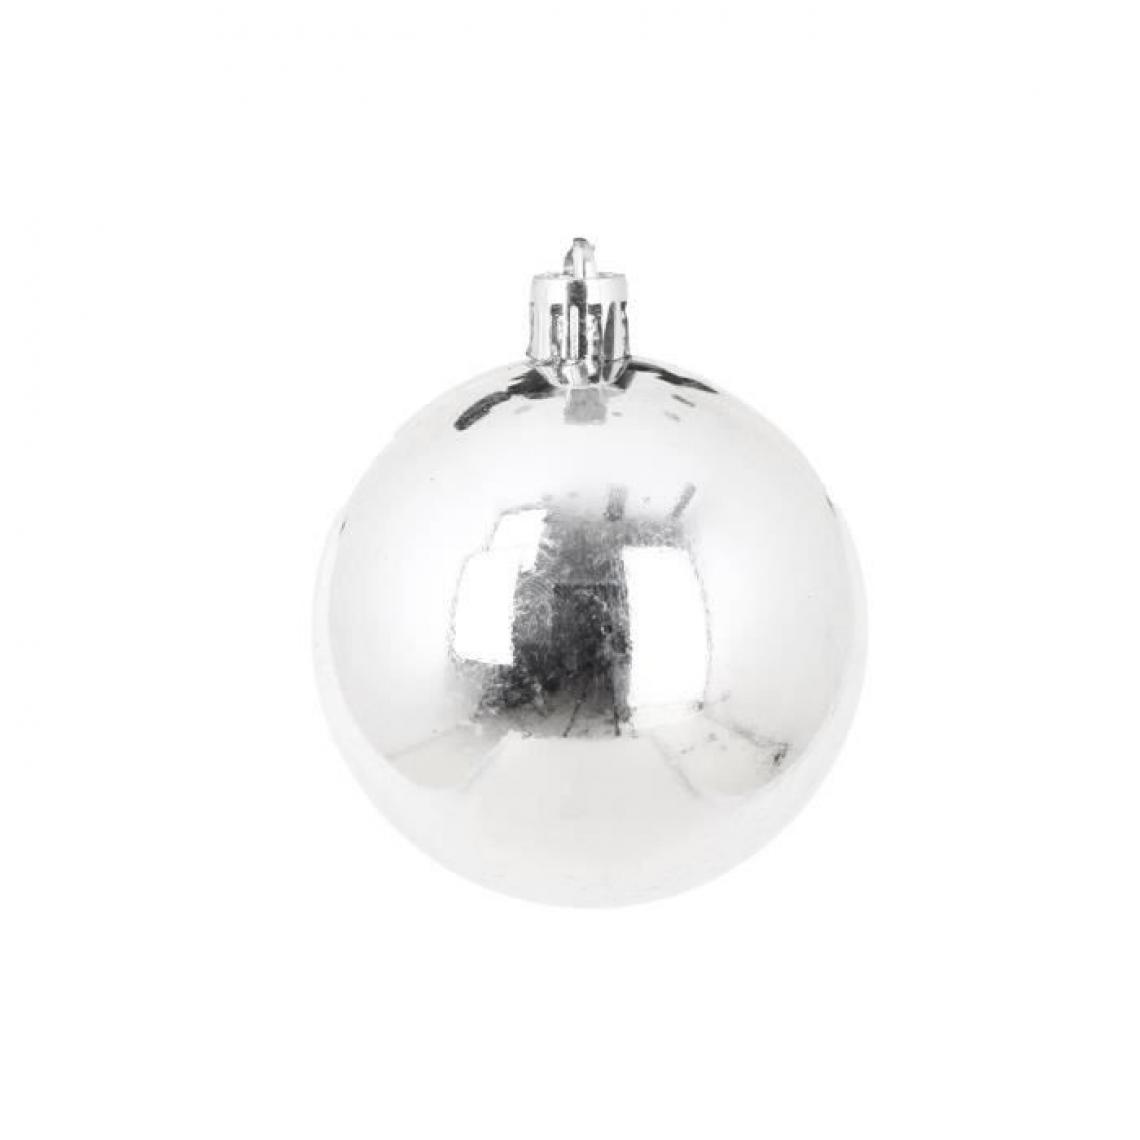 Cstore - AUTOUR DE MINUIT Set de 6 boules brillantes - Ø6 cm - Gris argent - Décorations de Noël